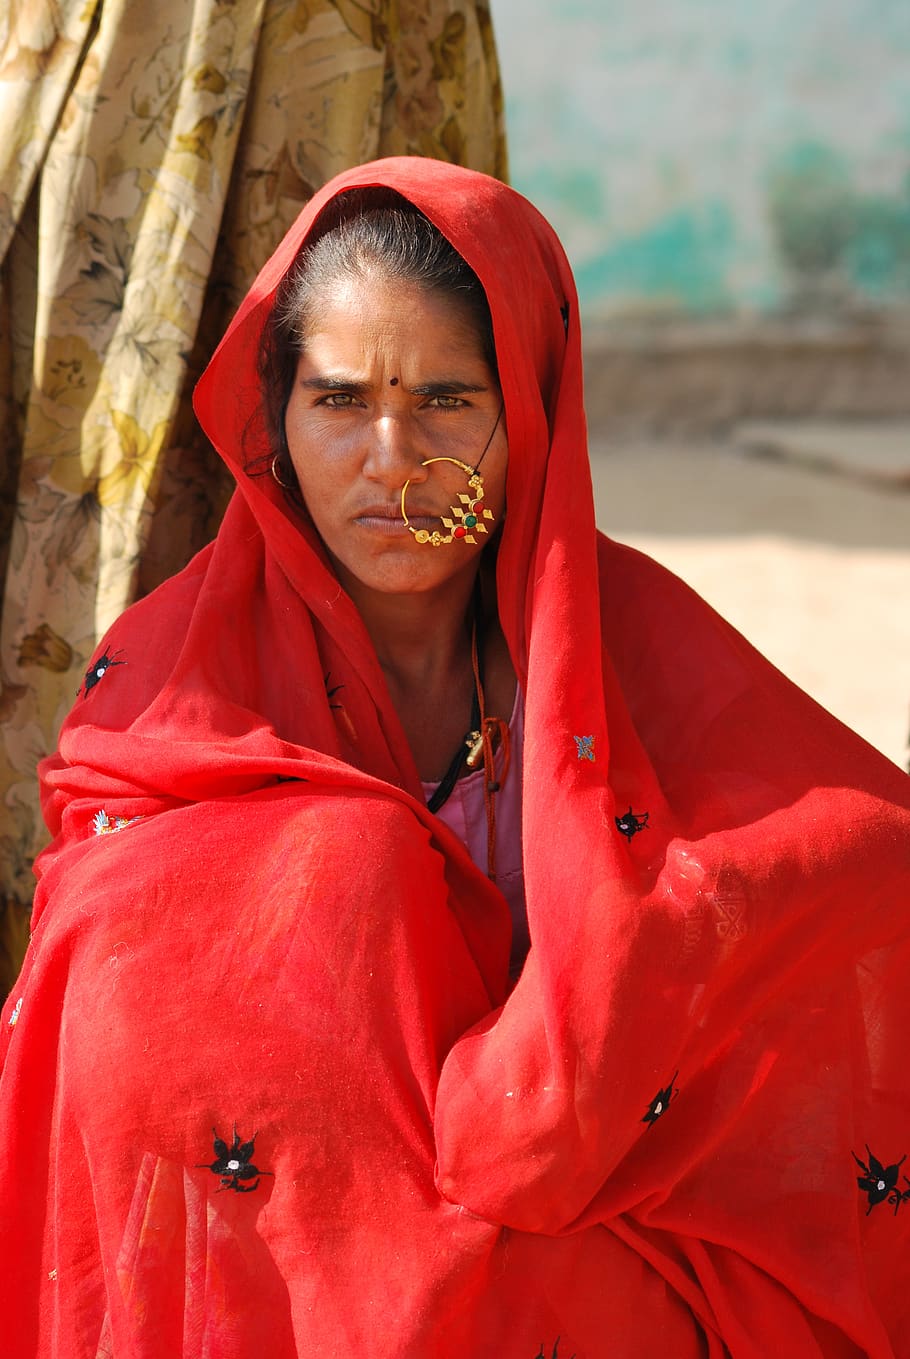 mulher, vila, roupas vermelhas, cultural, campo, Índia, pensativo, jóias, uma pessoa, pessoas reais